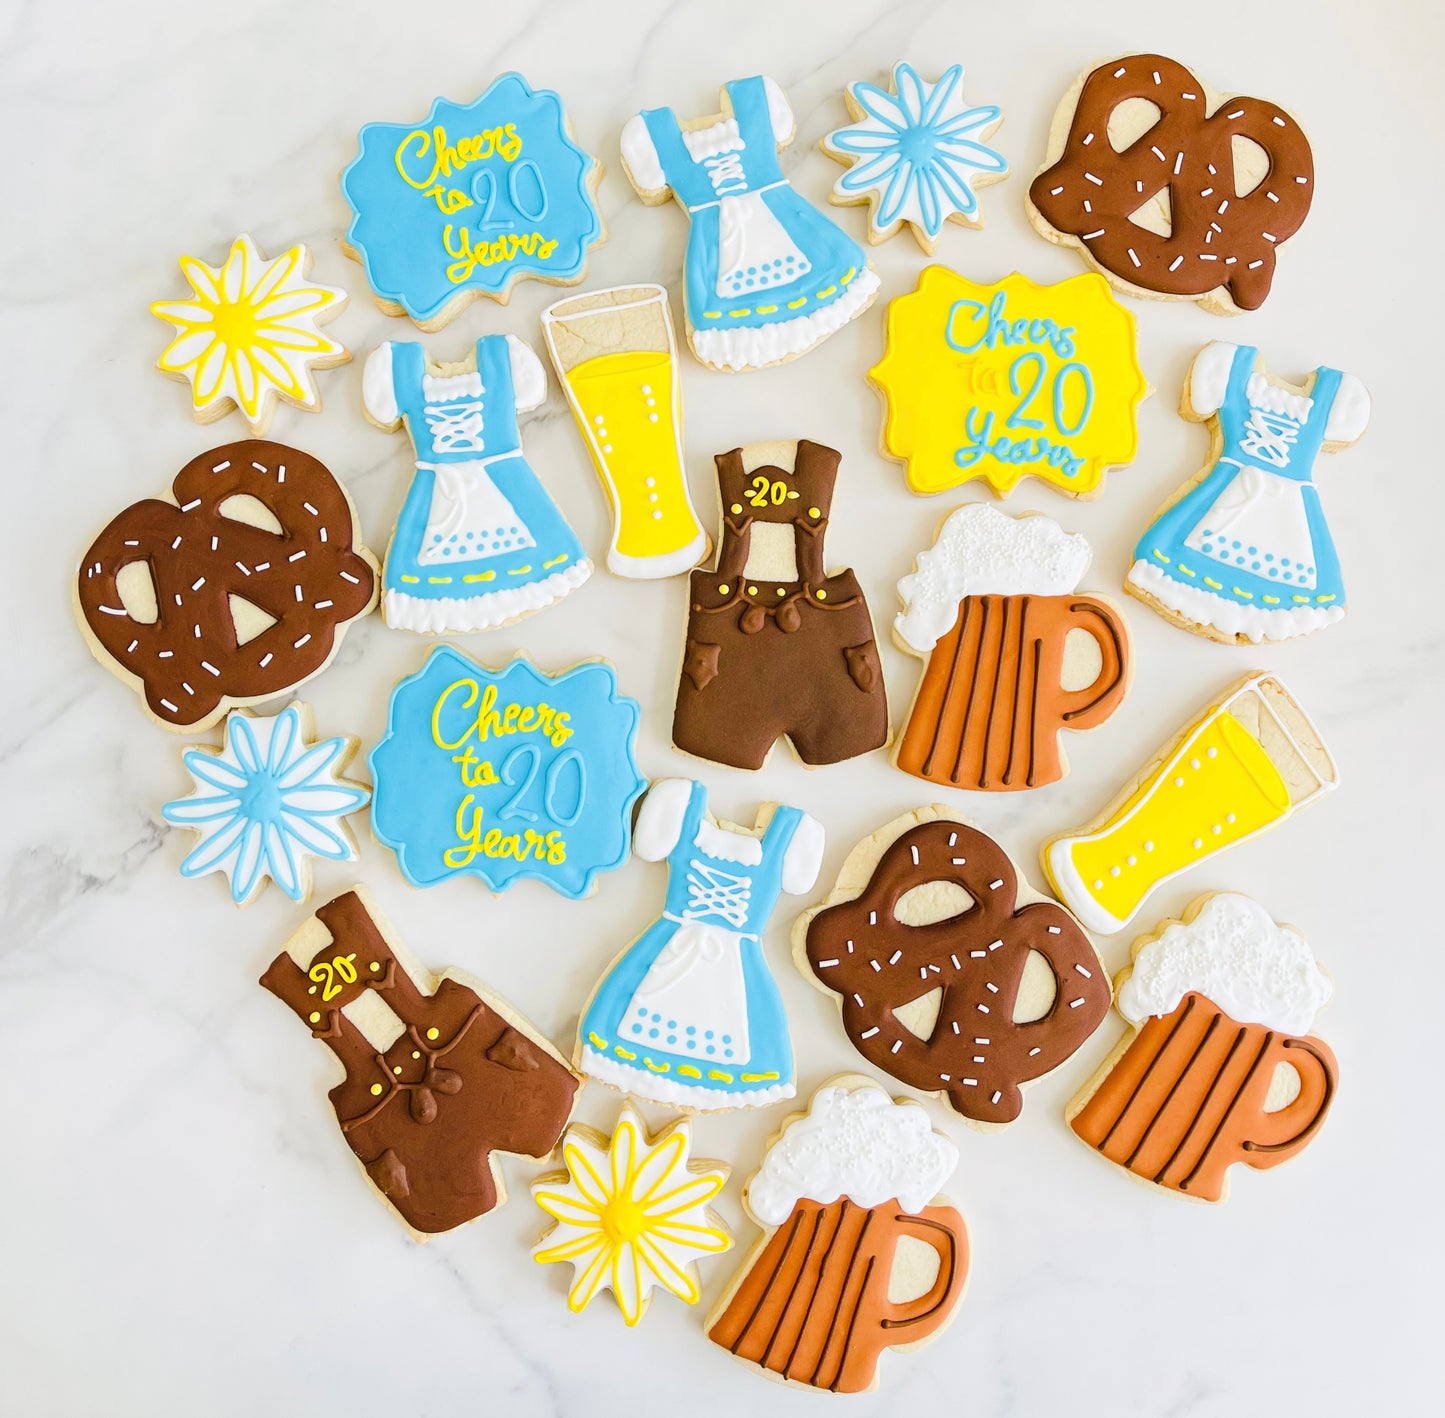 Oktoberfest themed Sugar cookies